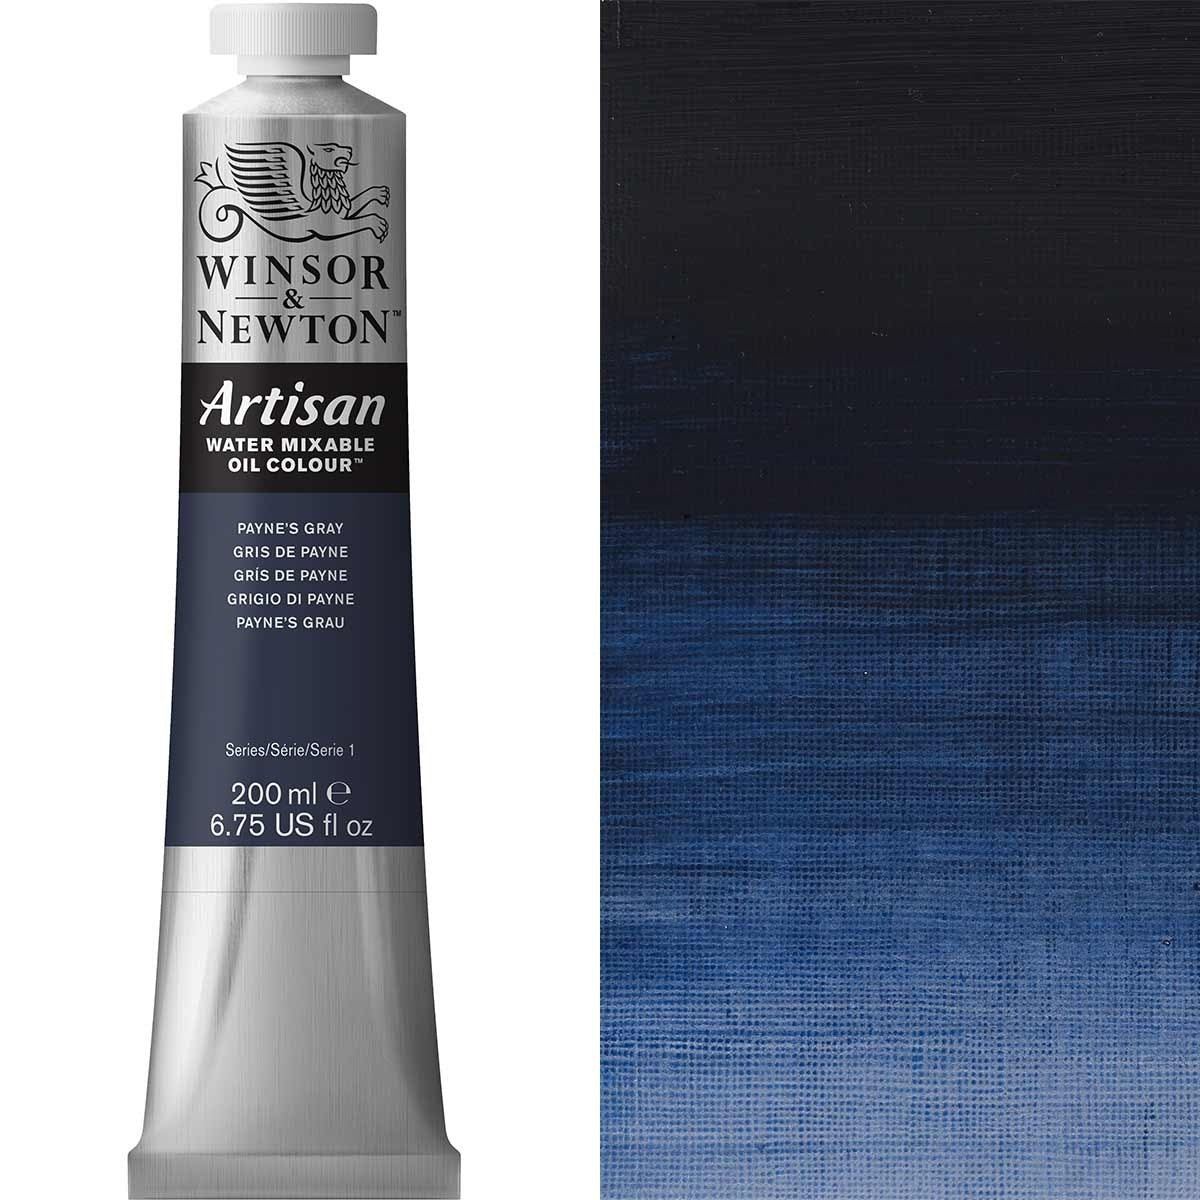 Winsor e Newton - Watermixable di colore olio artigianale - 200 ml - paynes grigio